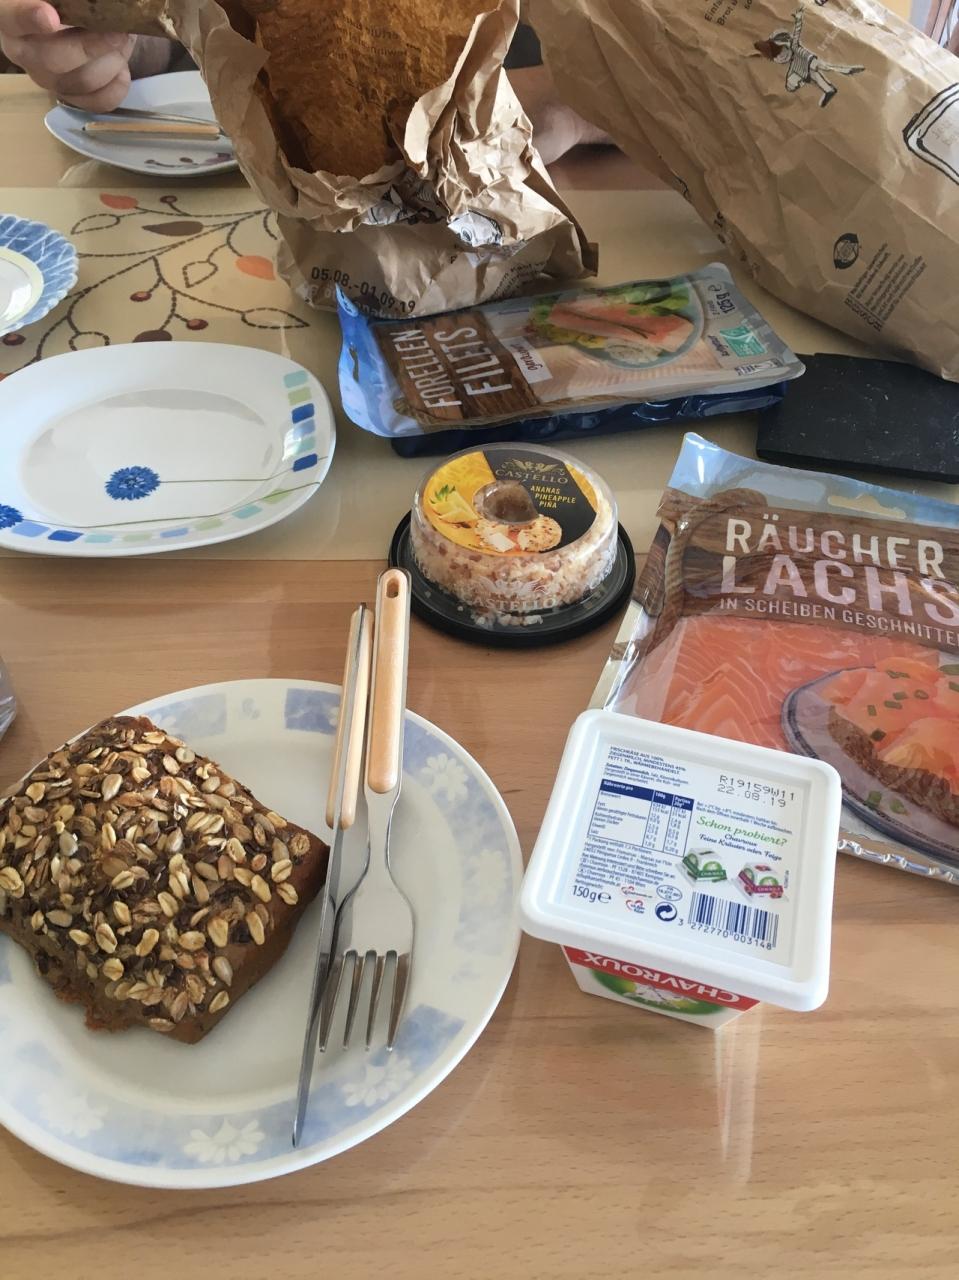 ドイツ人直伝の朝食スタイル ドイツの旅行記 ブログ By まゆちさん フォートラベル